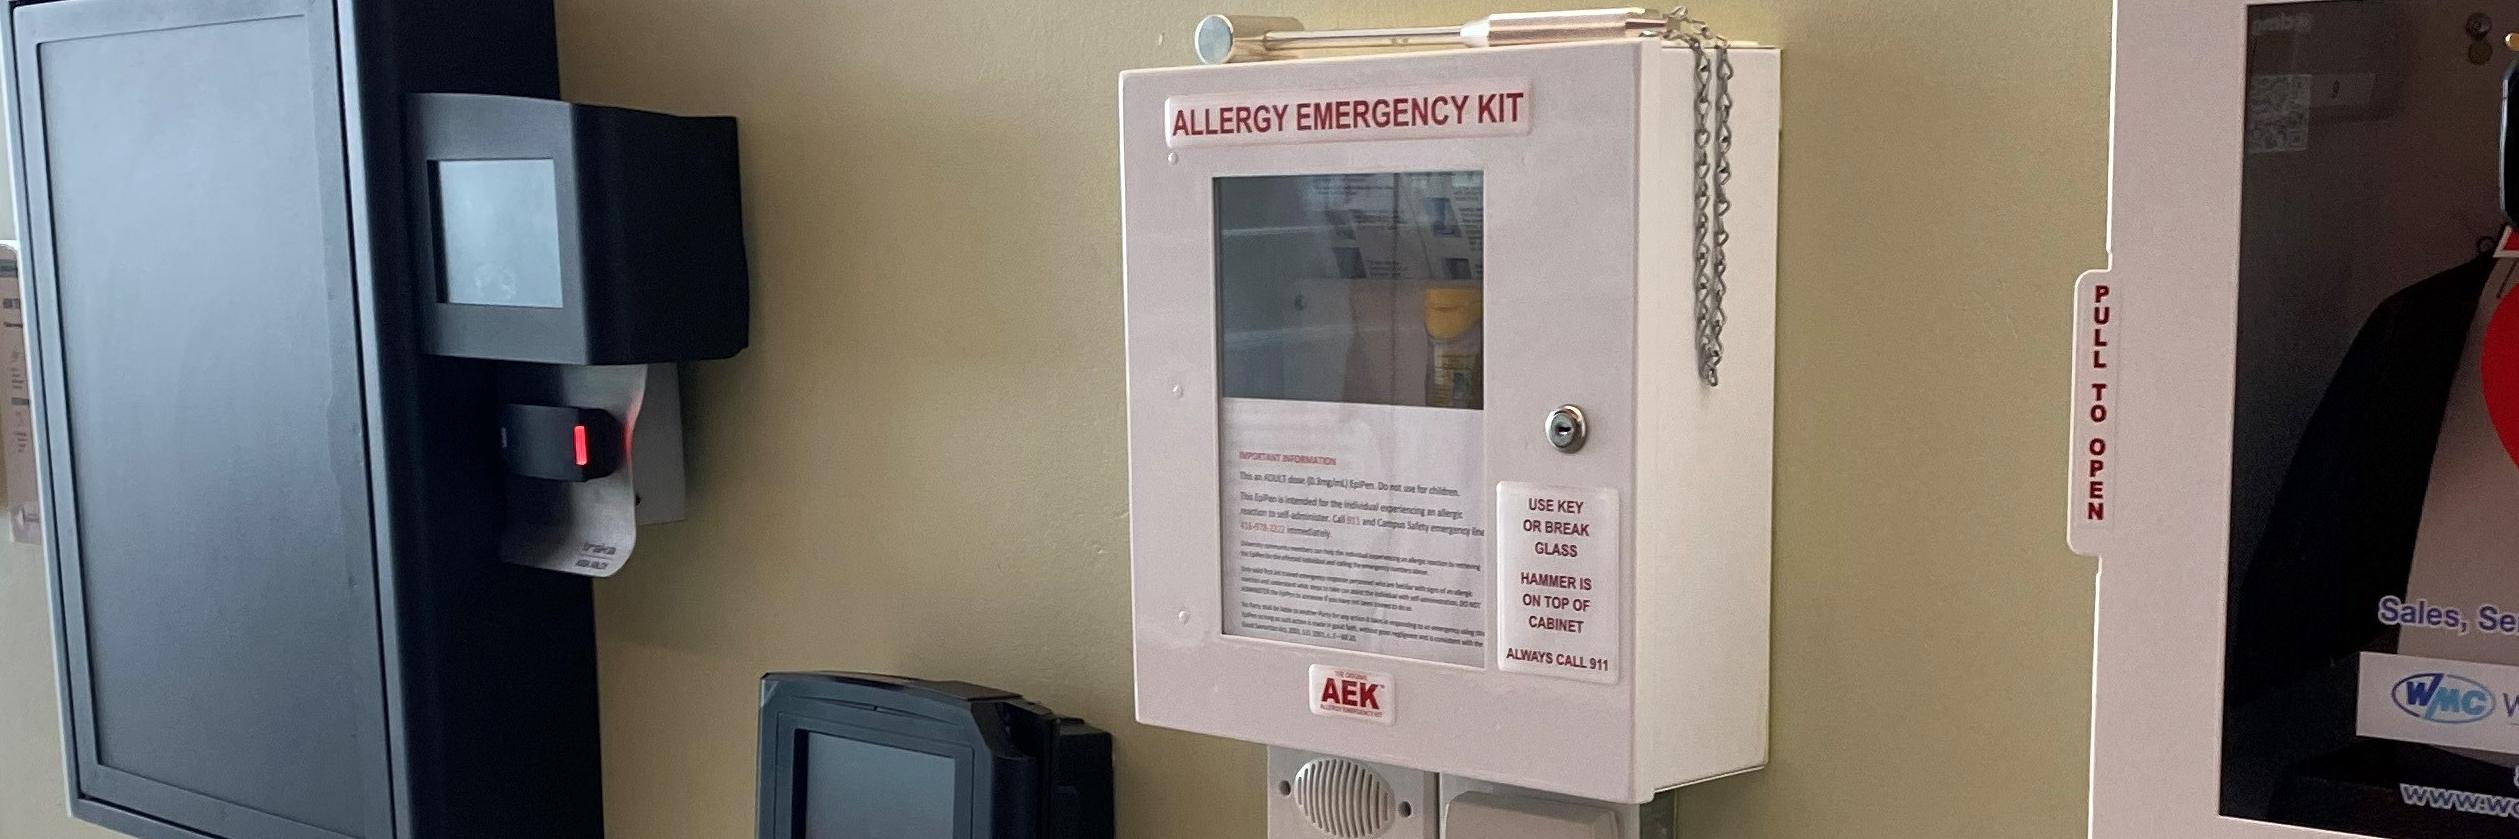 Allergy emergency kits